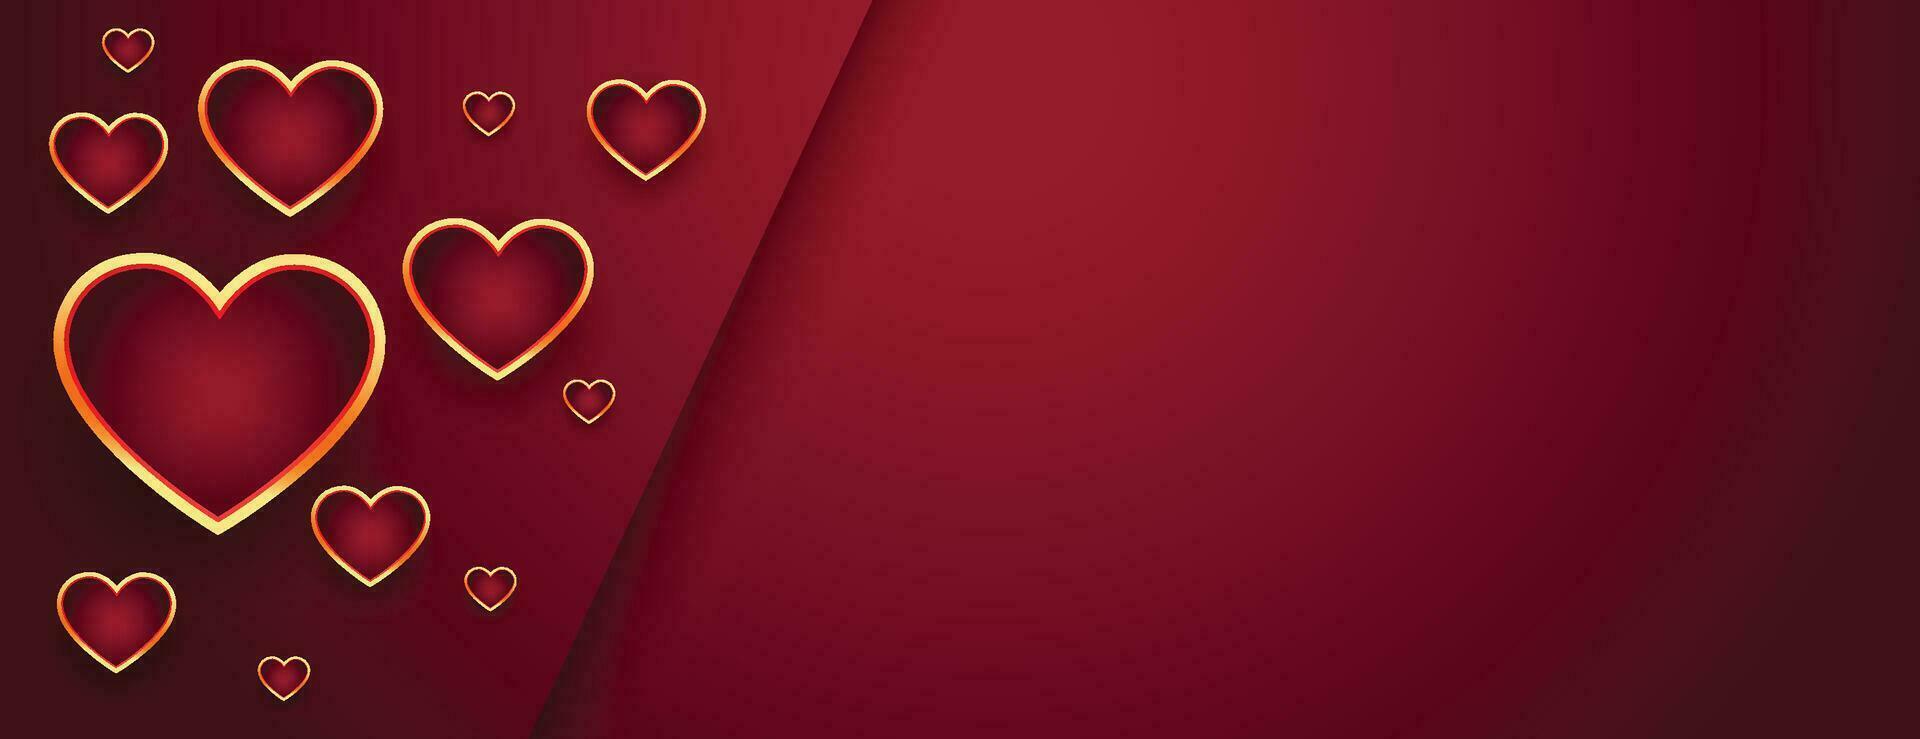 valentines dag calligraphic hälsning i hjärta formad gyllene ram på en röd vätska vågor bakgrund. vektor